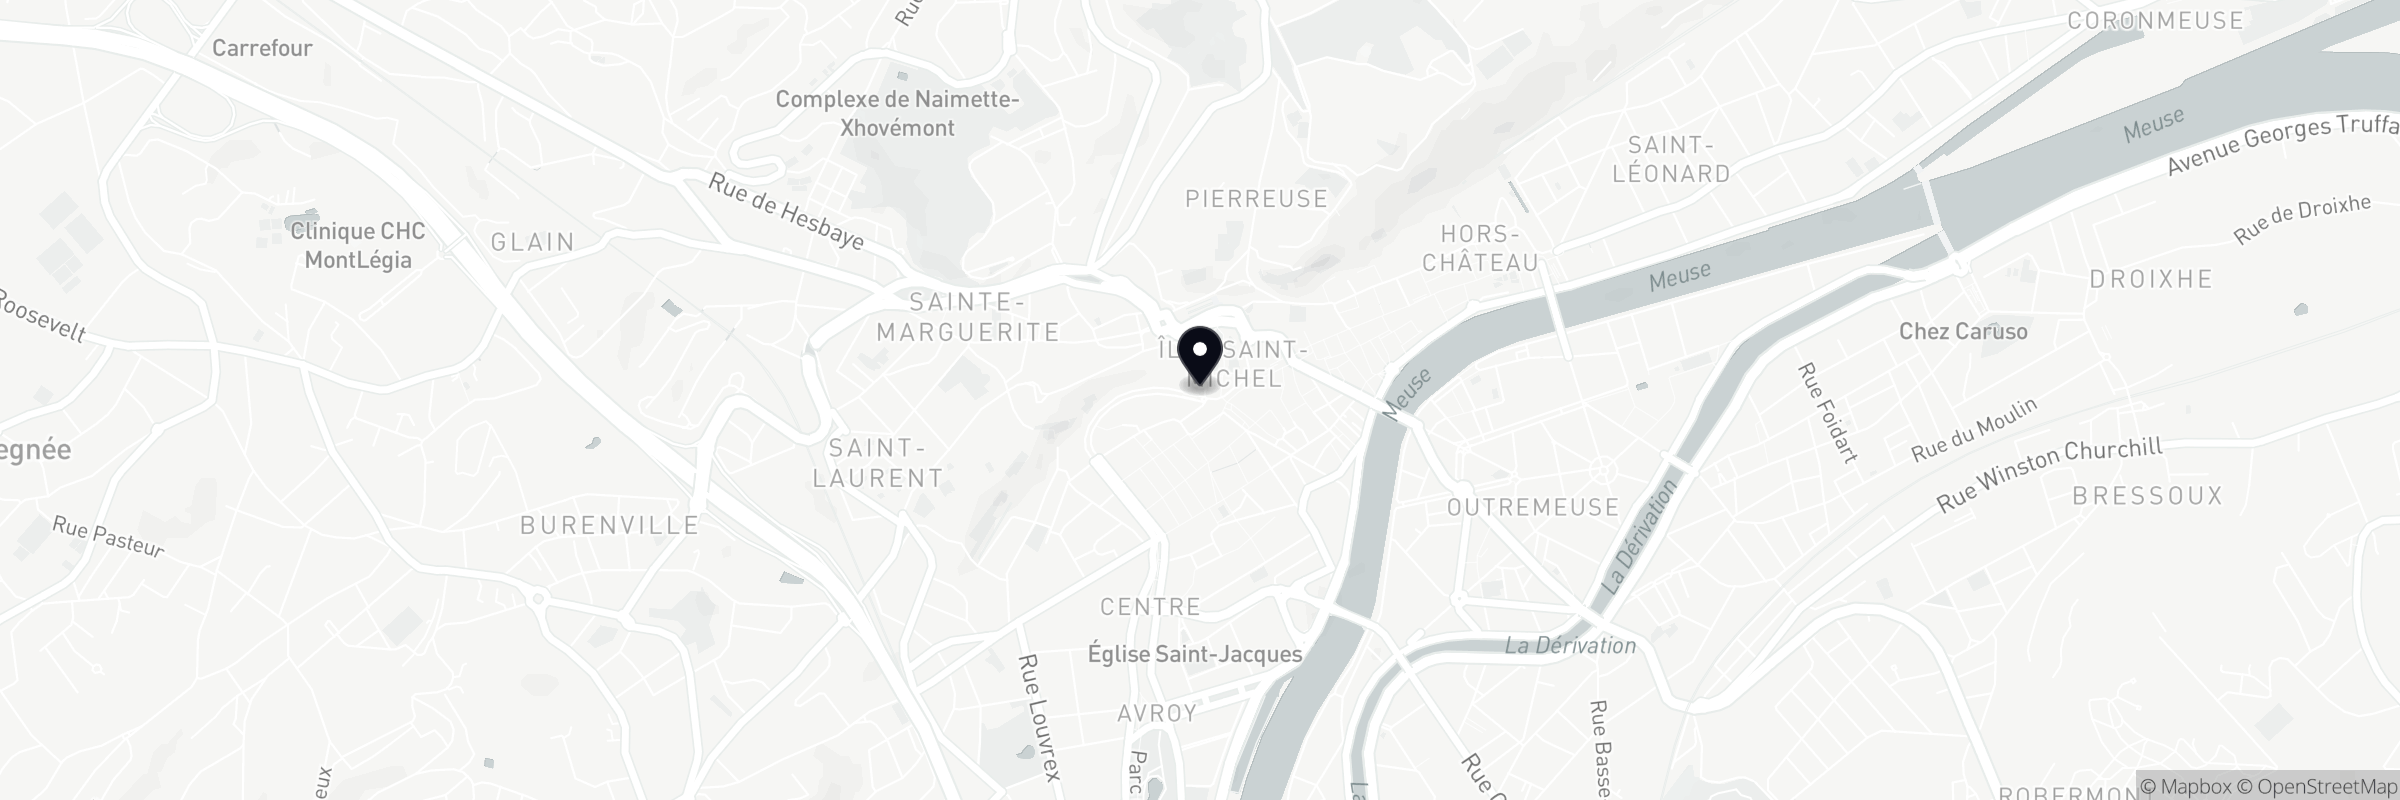 Die Karte zeigt die Adresse von Liège